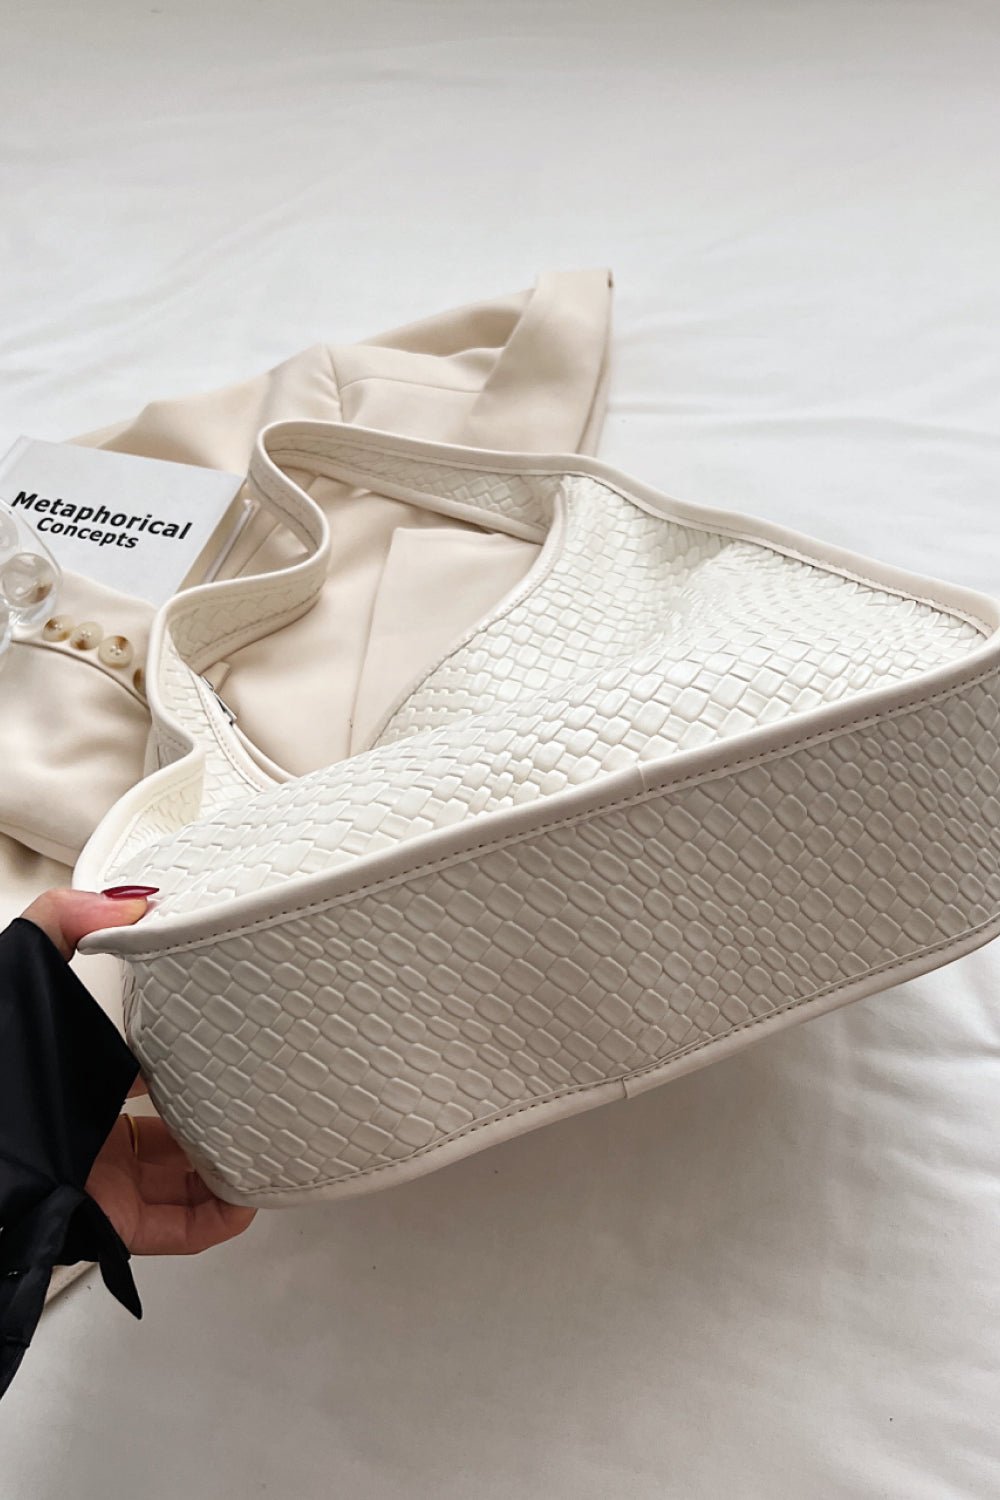 PU Leather Shoulder Bag - Fashion Girl Online Store